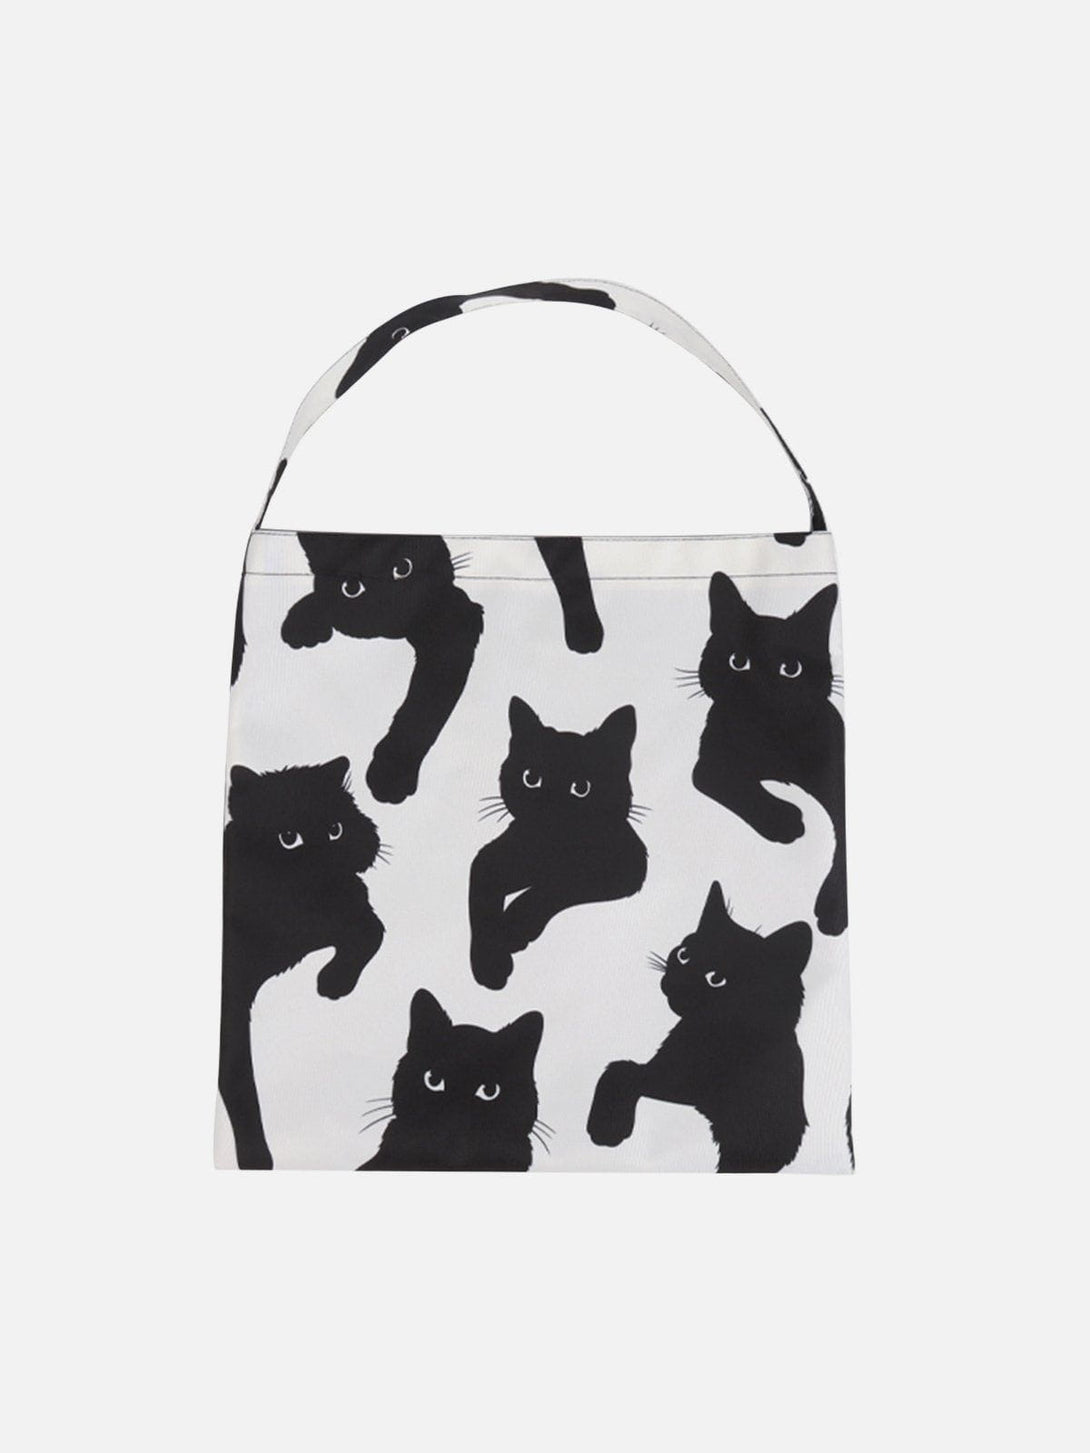 Levefly - Cat Print Canvas Shoulder Bag - Streetwear Fashion - levefly.com